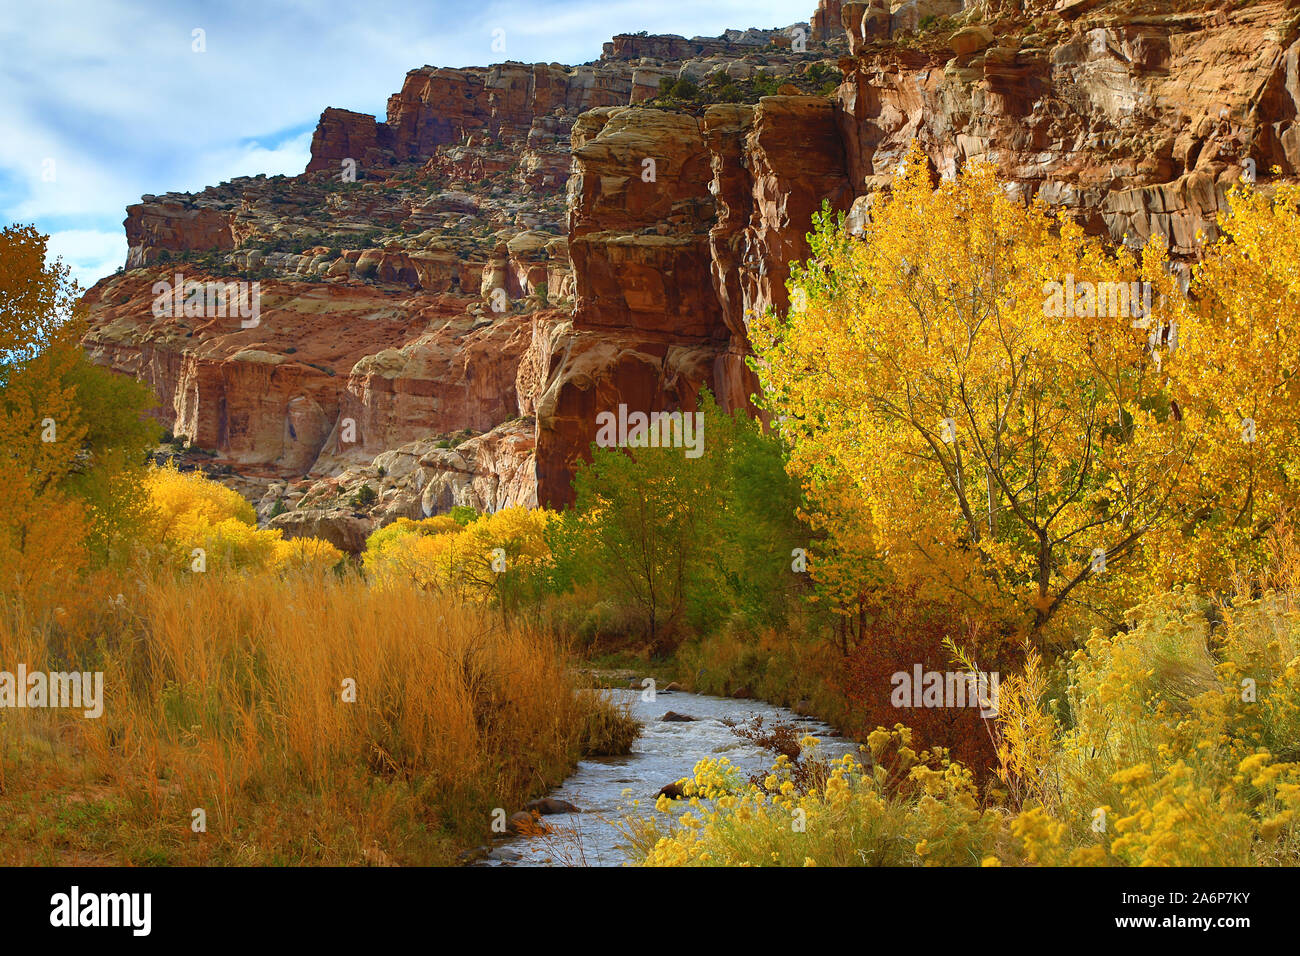 C'est un point de vue de la couleur à l'automne le long de la Fremont River et red rock cliffs dans Capitol Reef National Park, Utah, USA. Banque D'Images